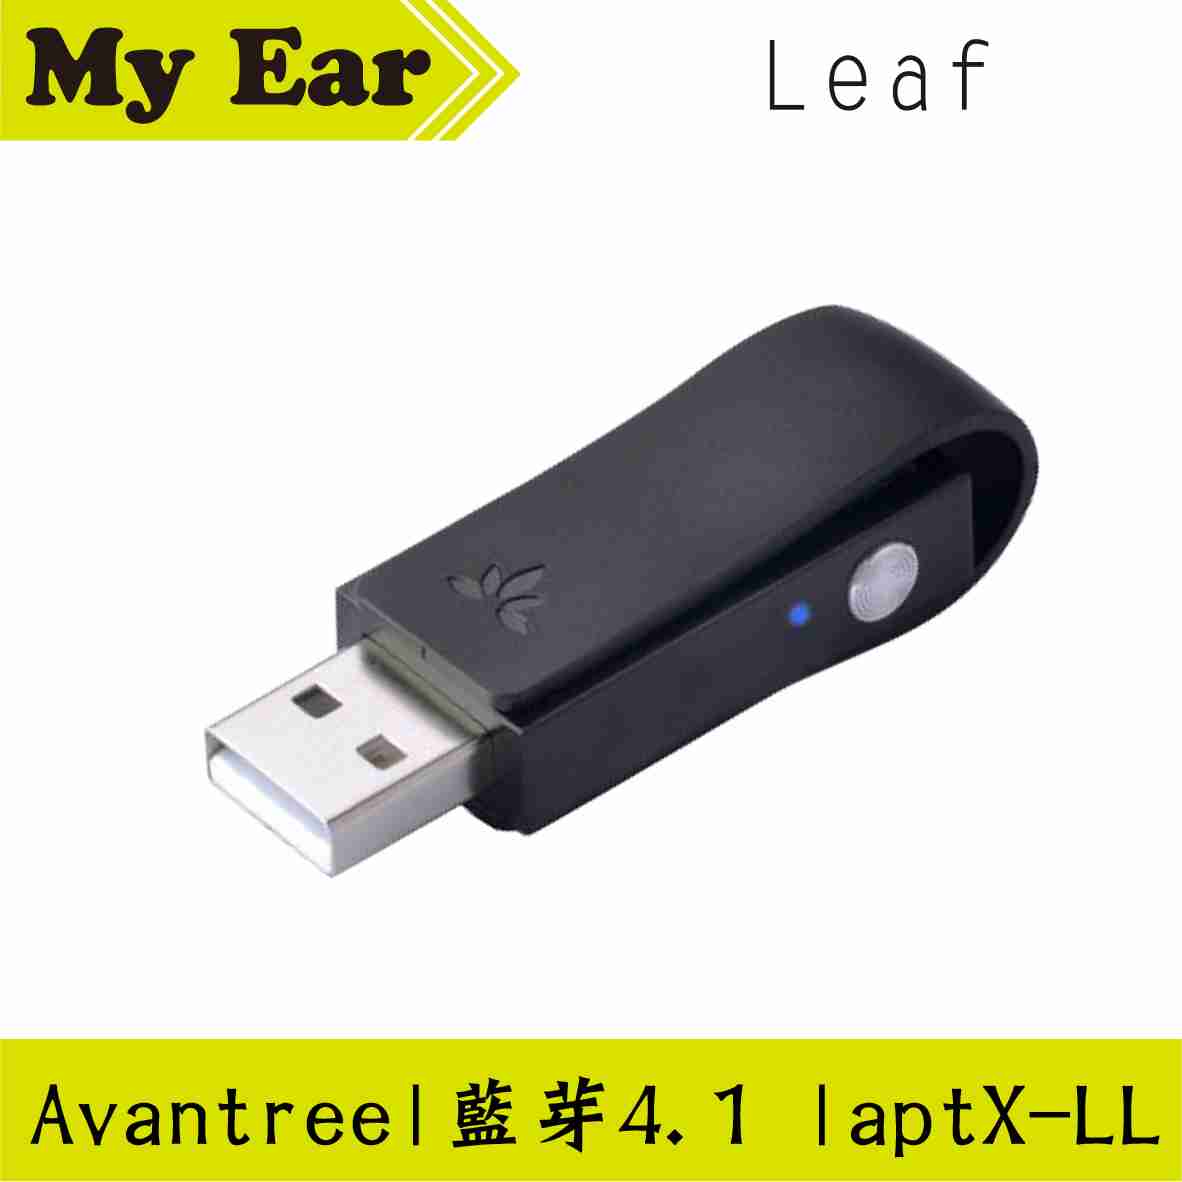 Avantree Leaf 低延遲USB藍牙音樂發射器 PS4 Switch 可支援 | My Ear 耳機專門店